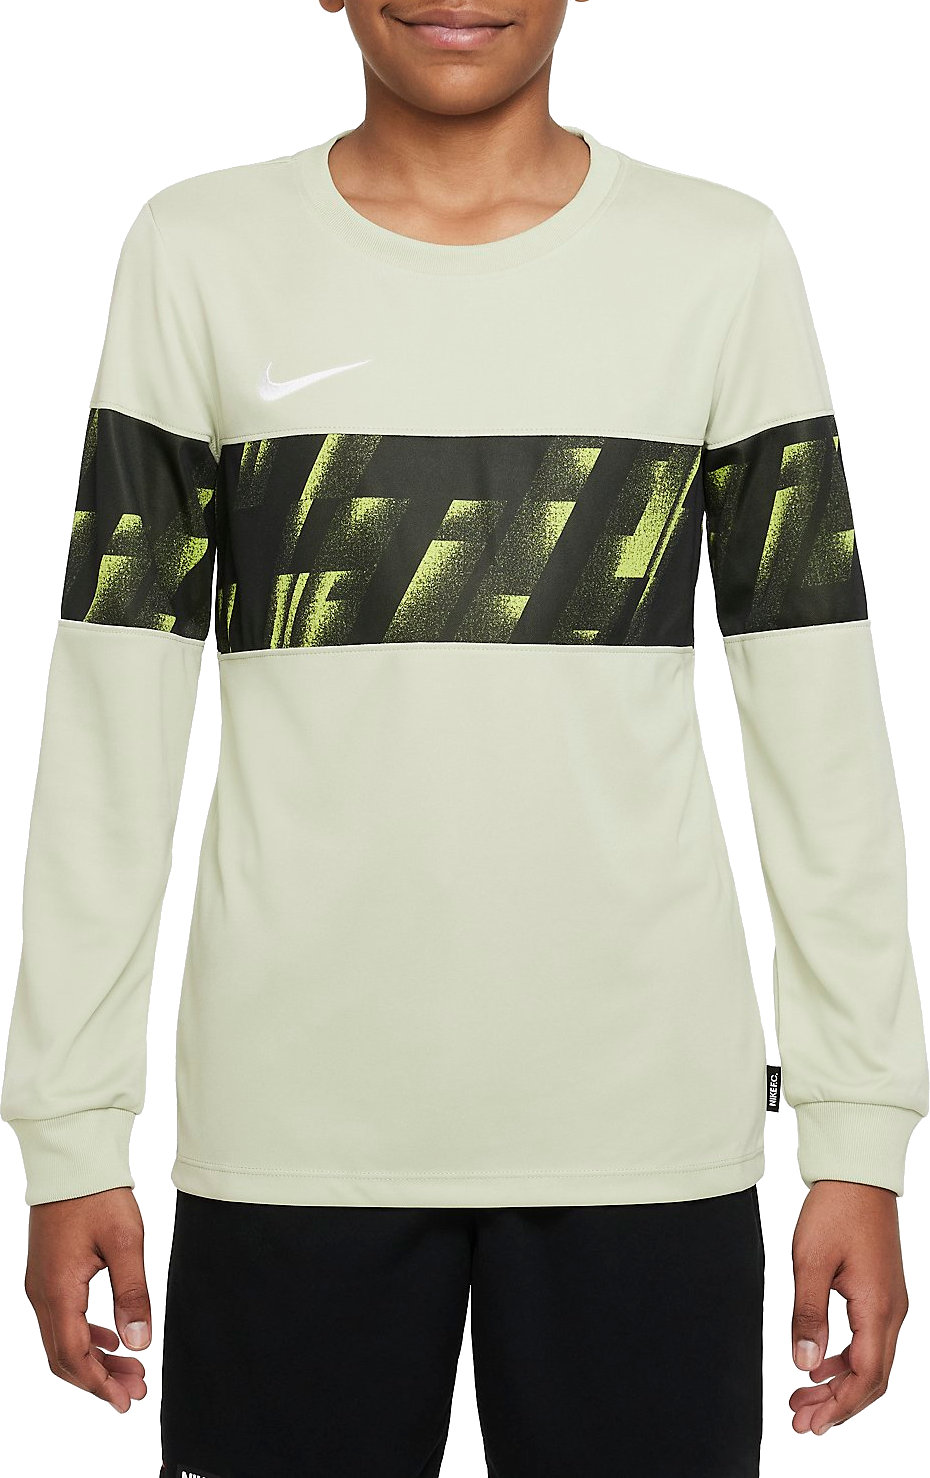 Μακρυμάνικη μπλούζα Nike Y NK DF FC LIBERO TOP LS GX